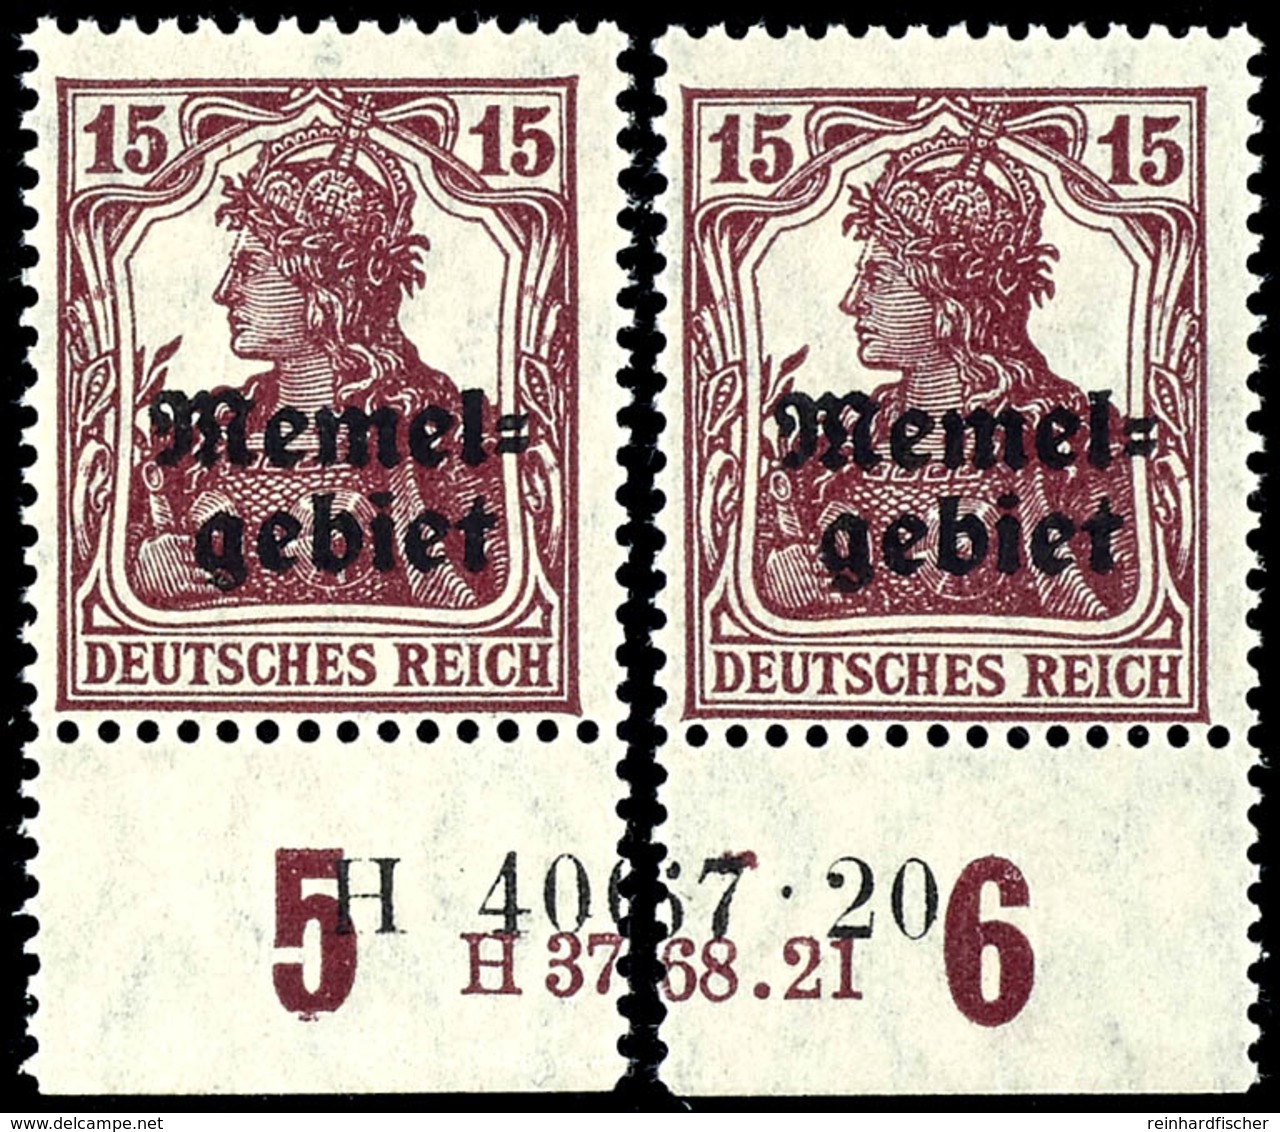 15 Pfennig Germania Mit Aufdruck, Senkrecht Geriffelte Gummierung, Postfrisch, Geteiltes Unterrandpaar Mit HAN-U 3768.21 - Memelland 1923